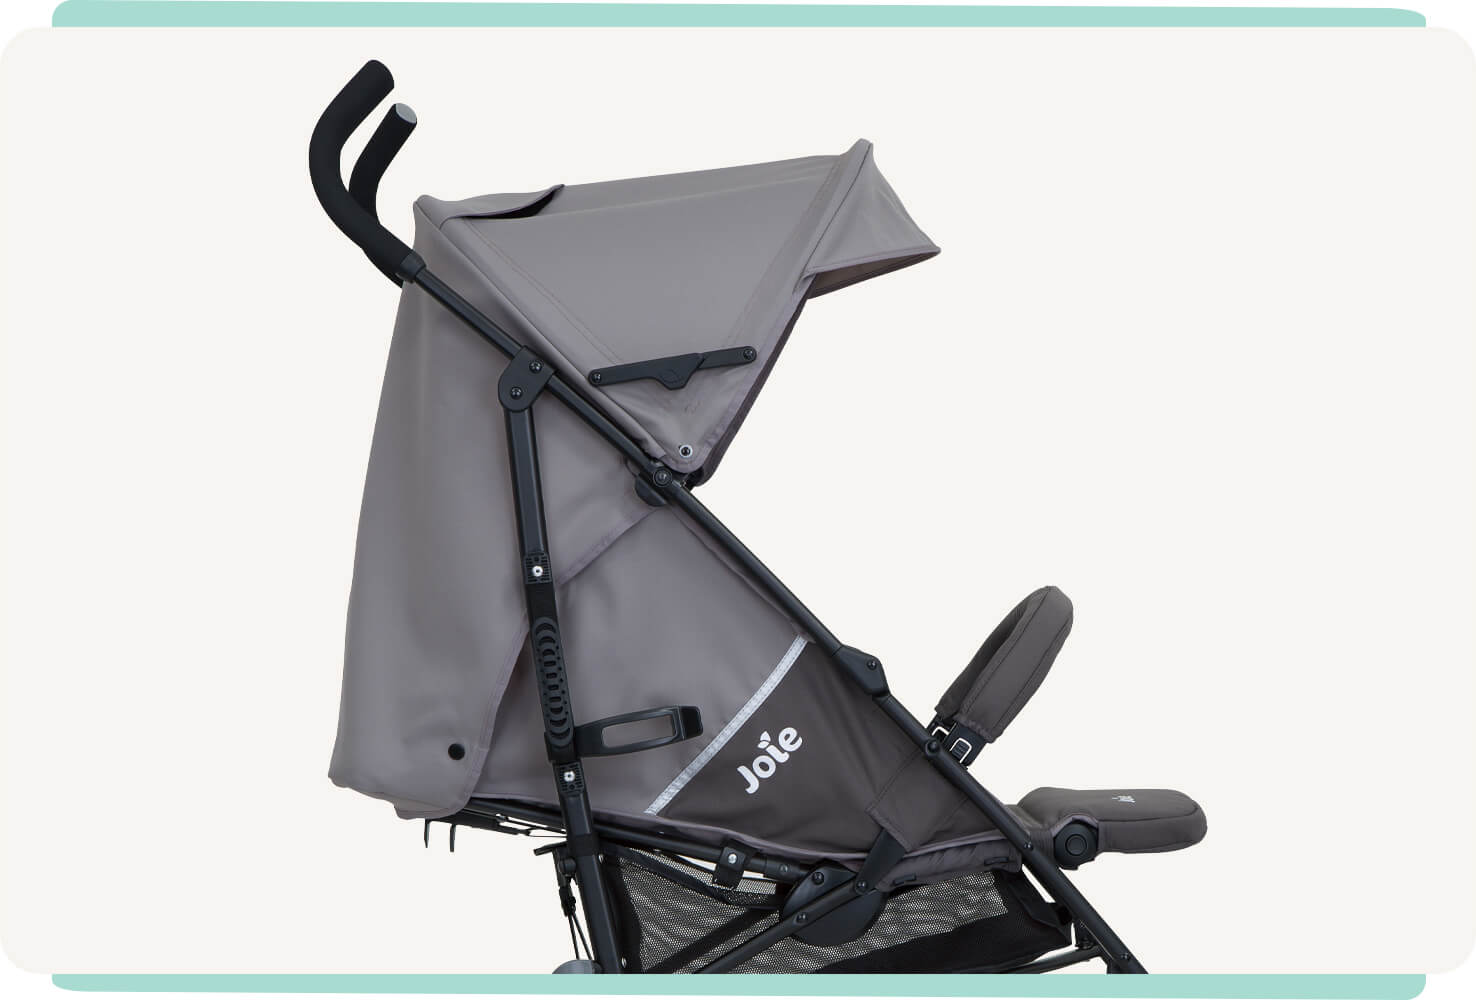  Zoomed in side profile of dark gray Joie nitro lx stroller.